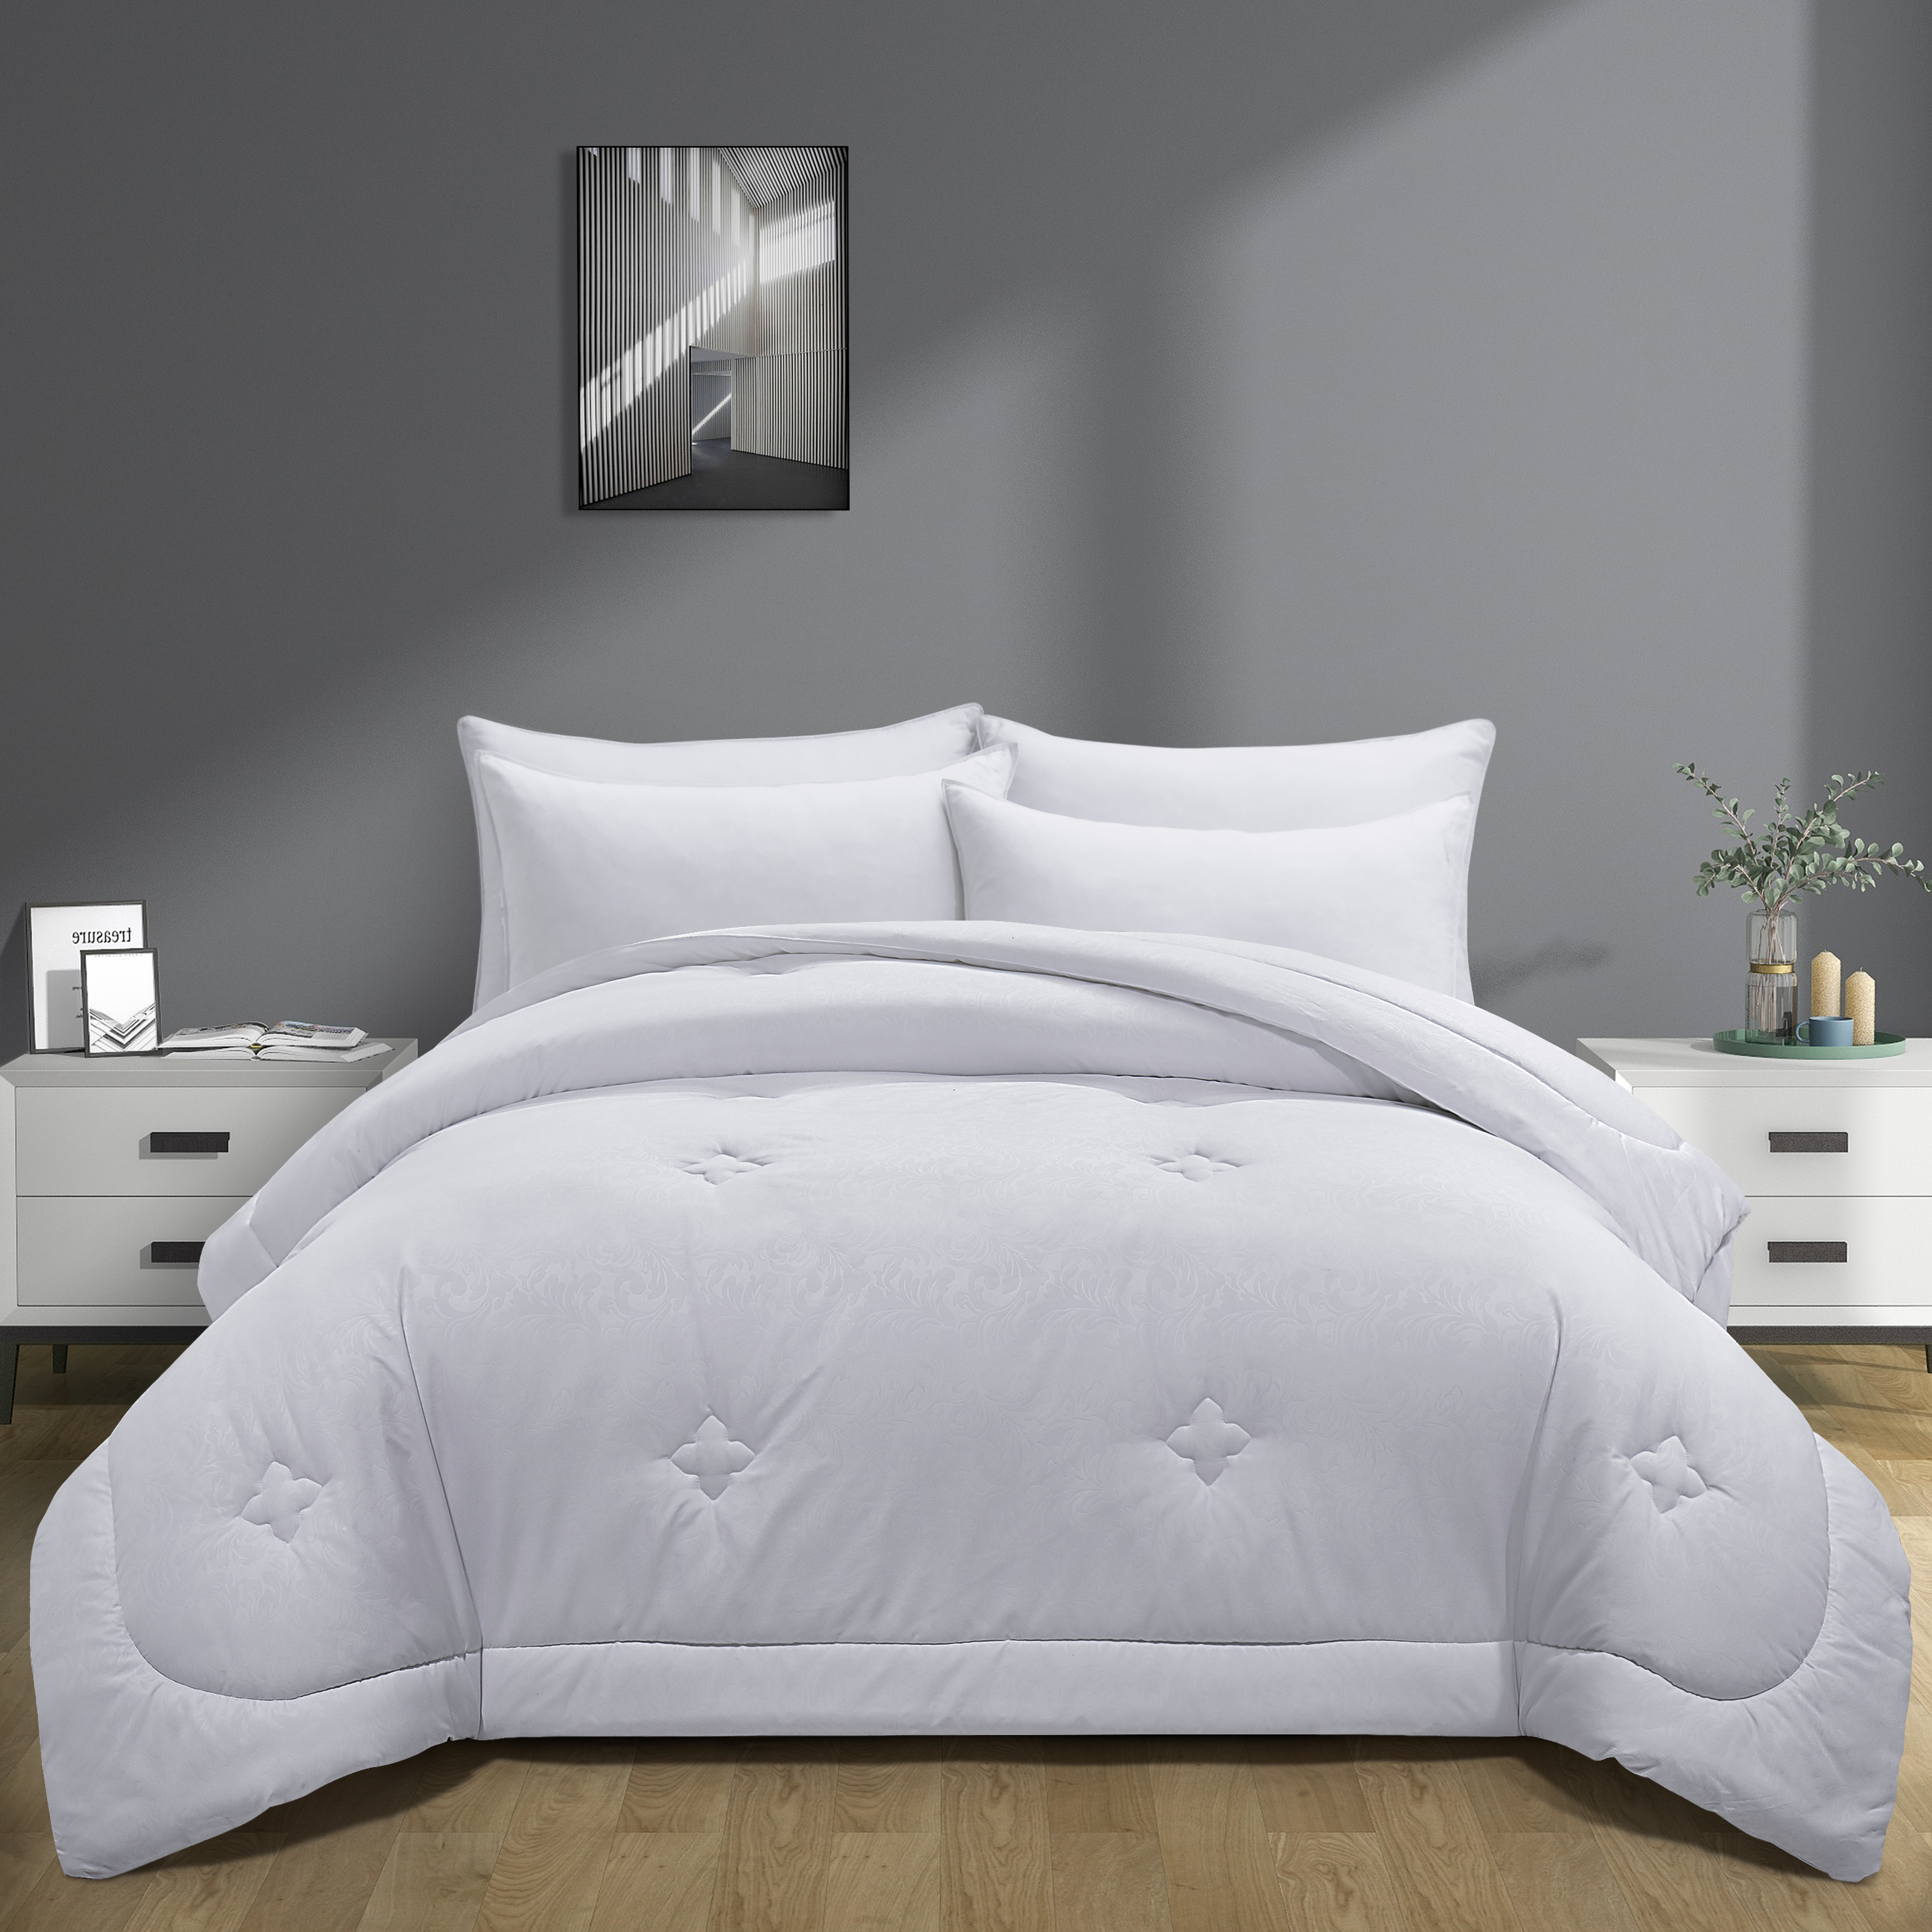 Embossed All Season Down Alternative Comforter- Medium Weight Duvet Insert - White, King